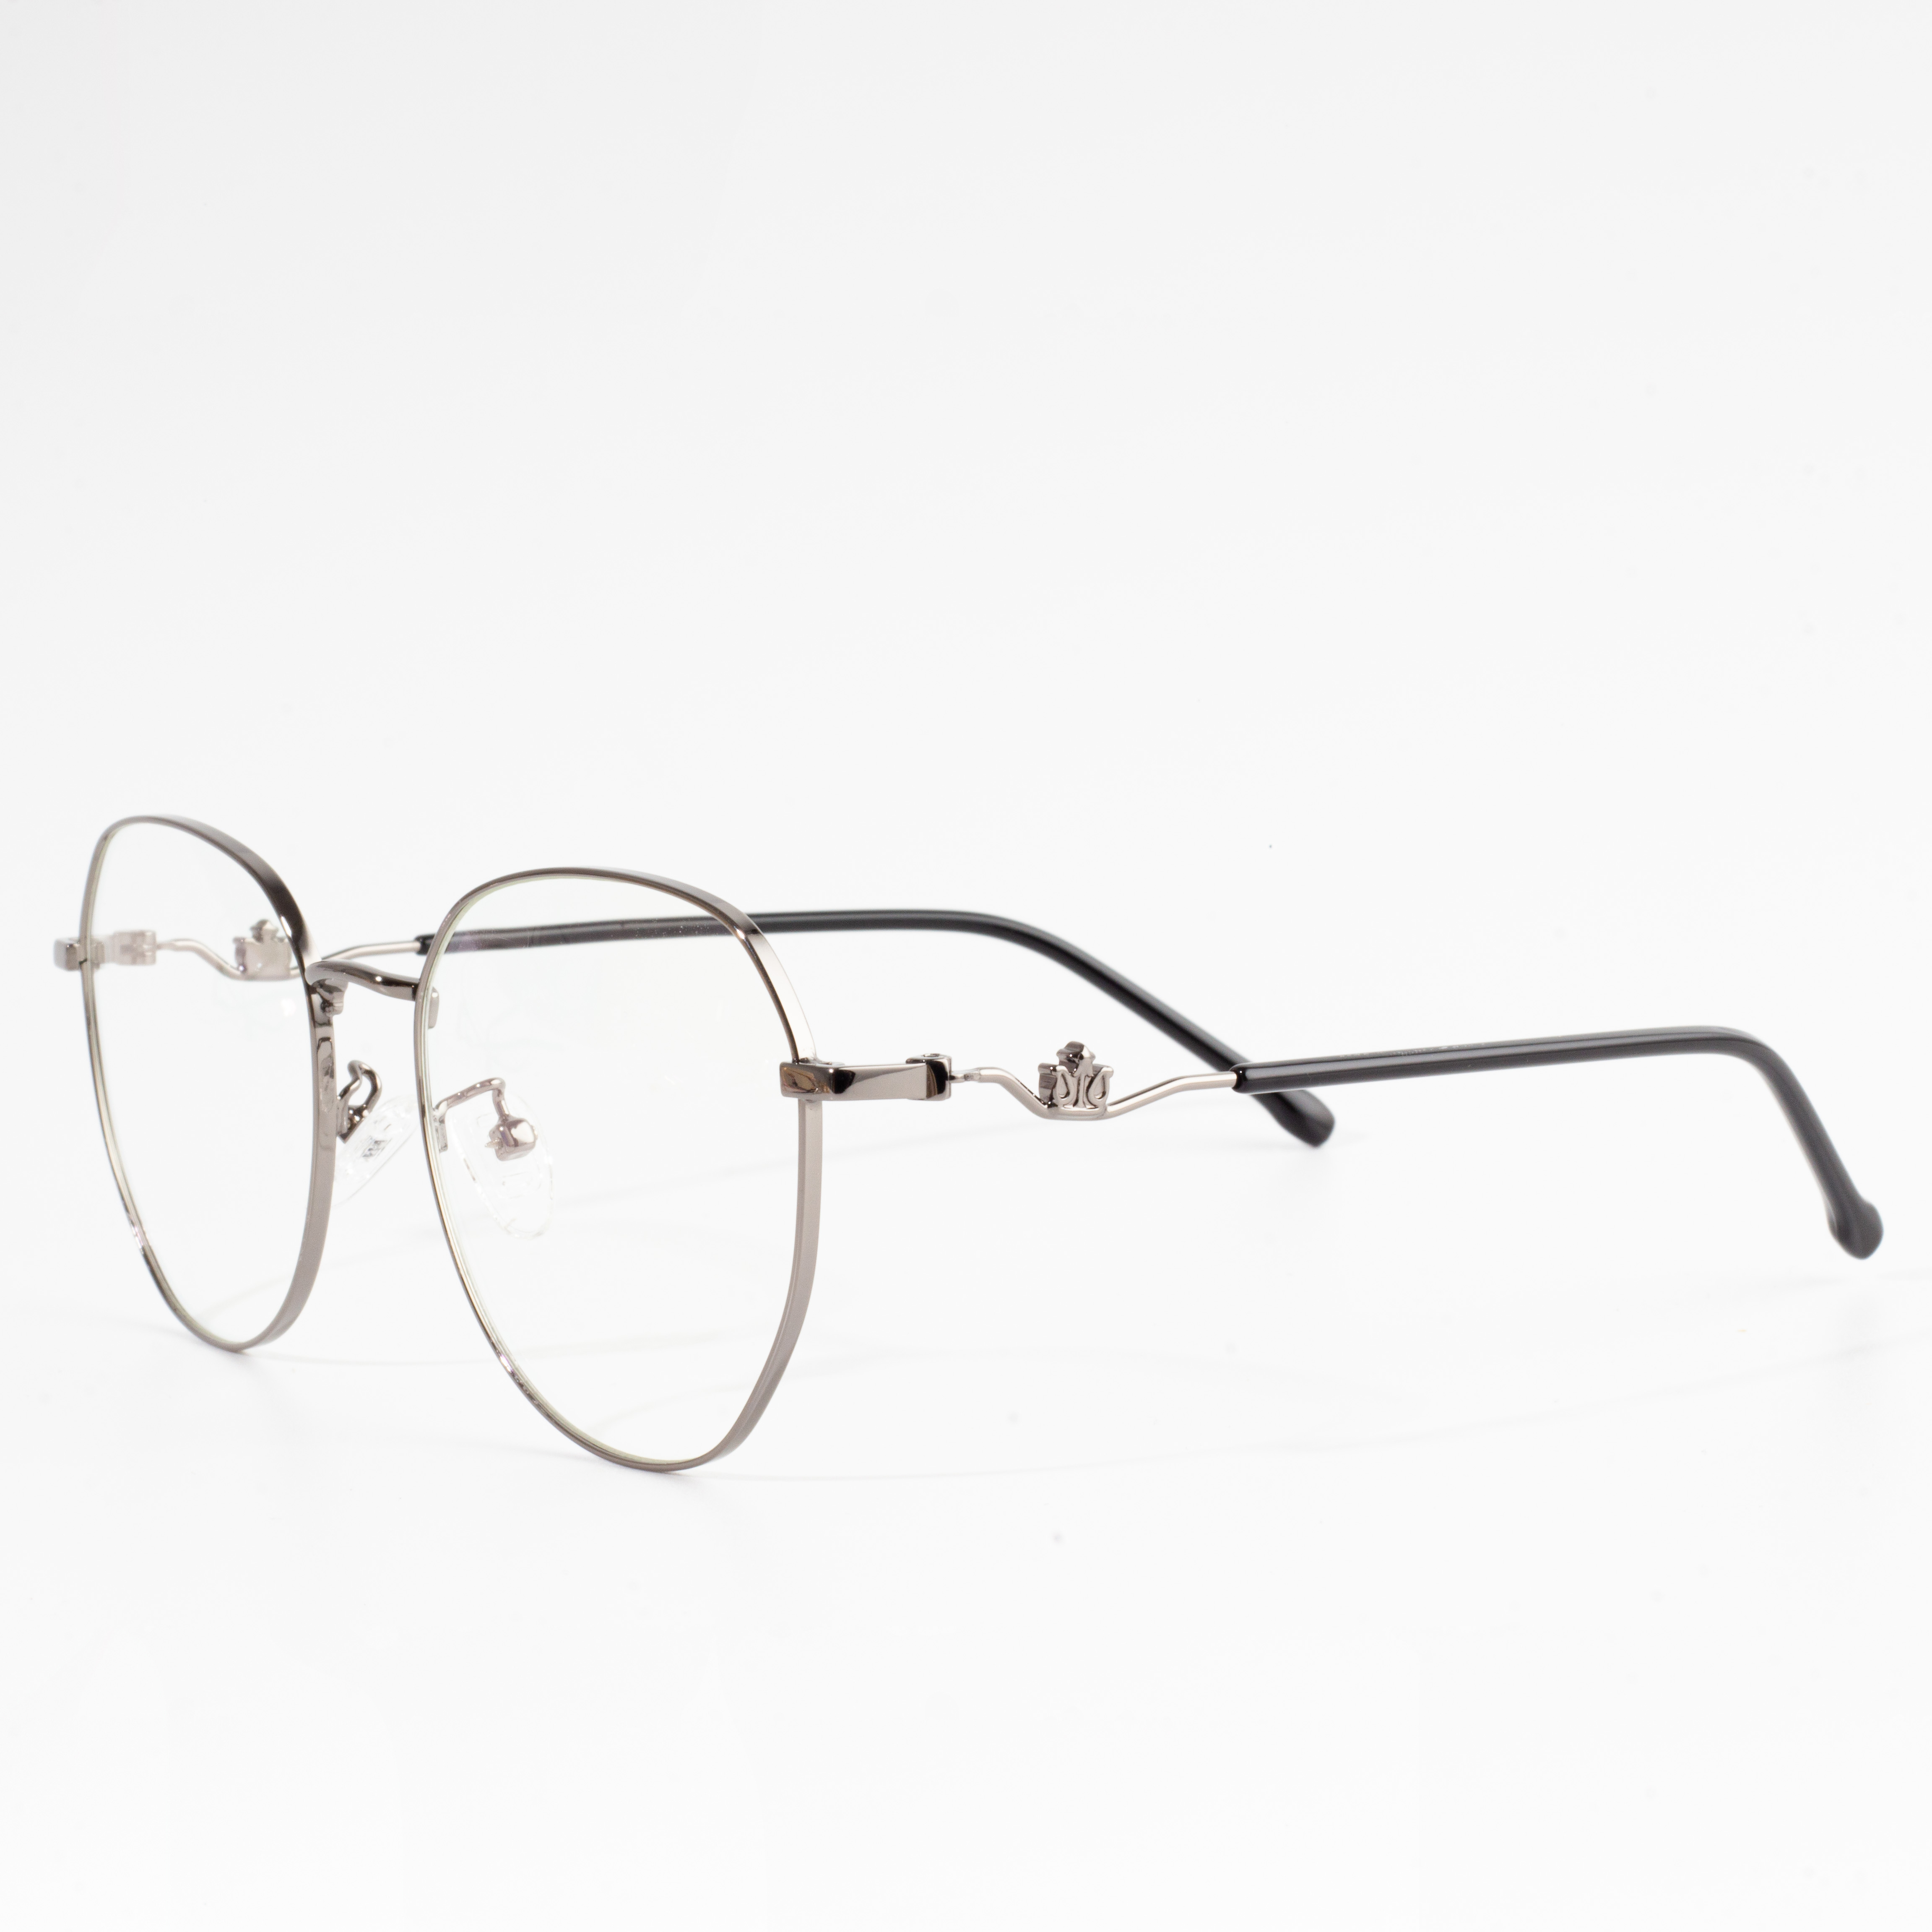 syze me kornizë të rrumbullakët